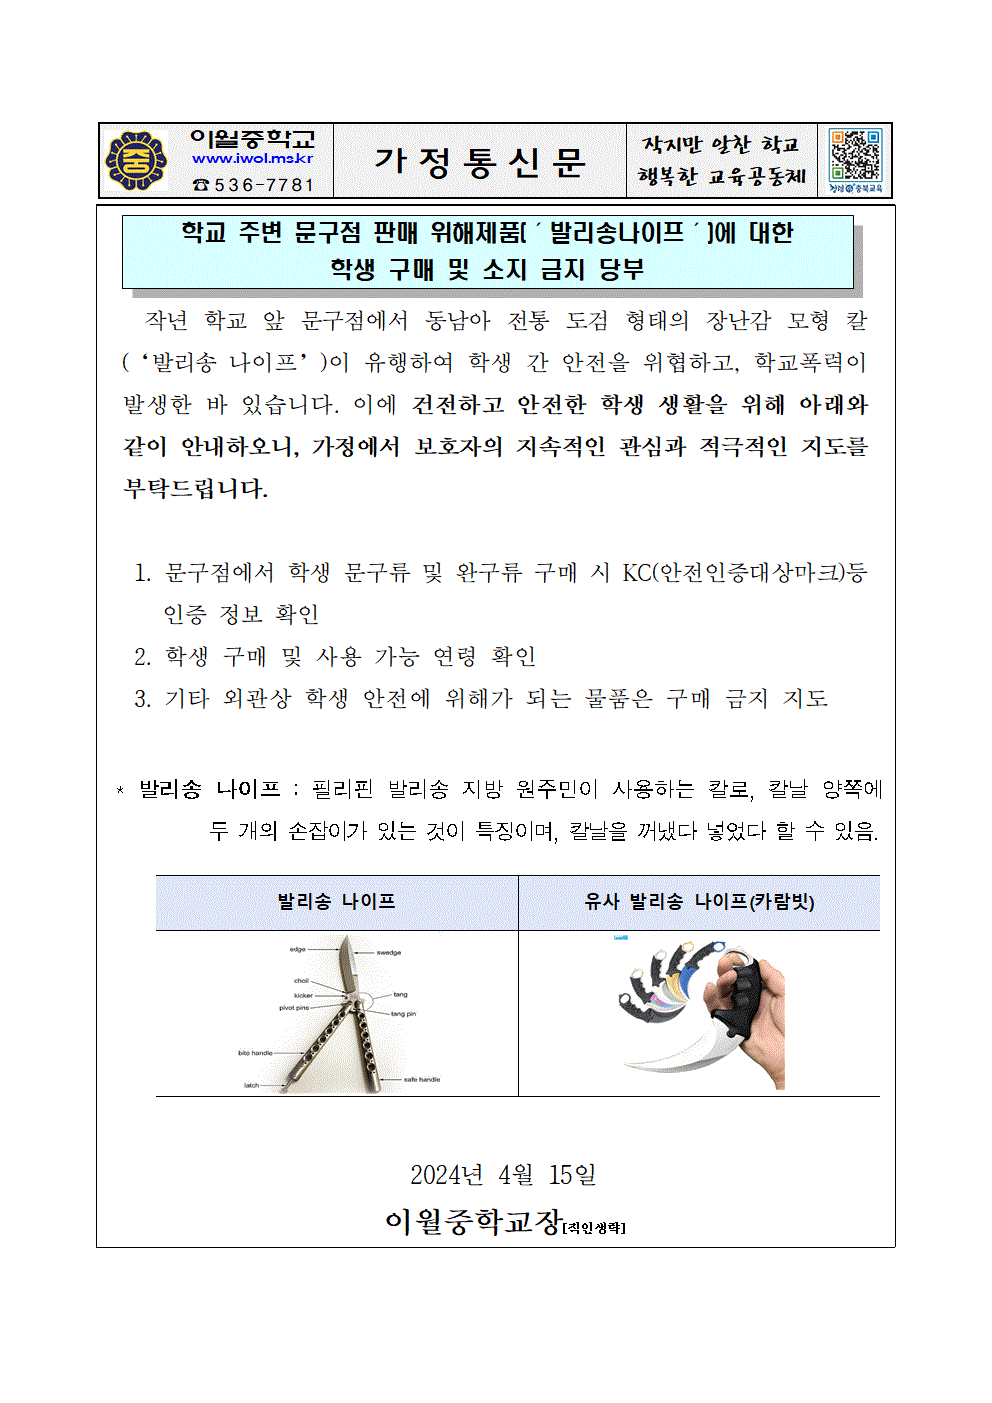 2024. 문구점 판매 위해제품 소지 금지 당부 가정통신문001